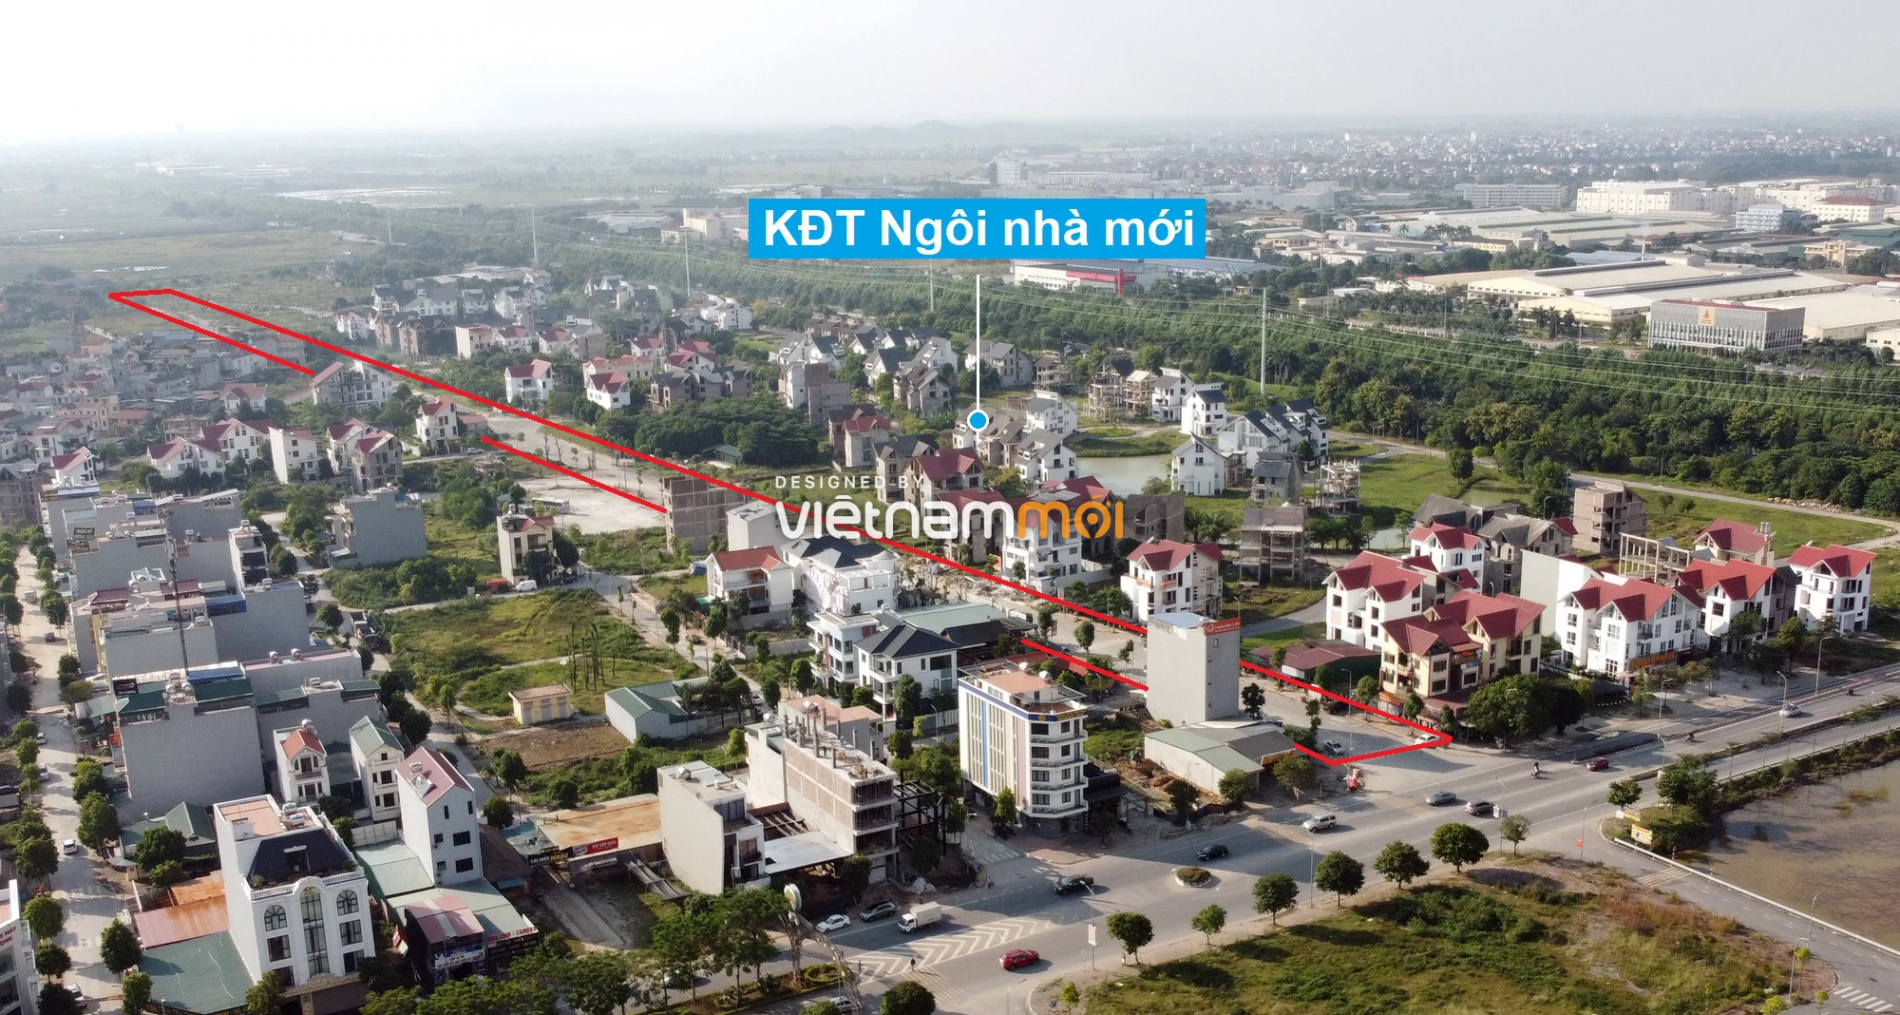 Những khu đất sắp thu hồi để mở đường ở huyện Quốc Oai, Hà Nội (phần 1) - Ảnh 16.